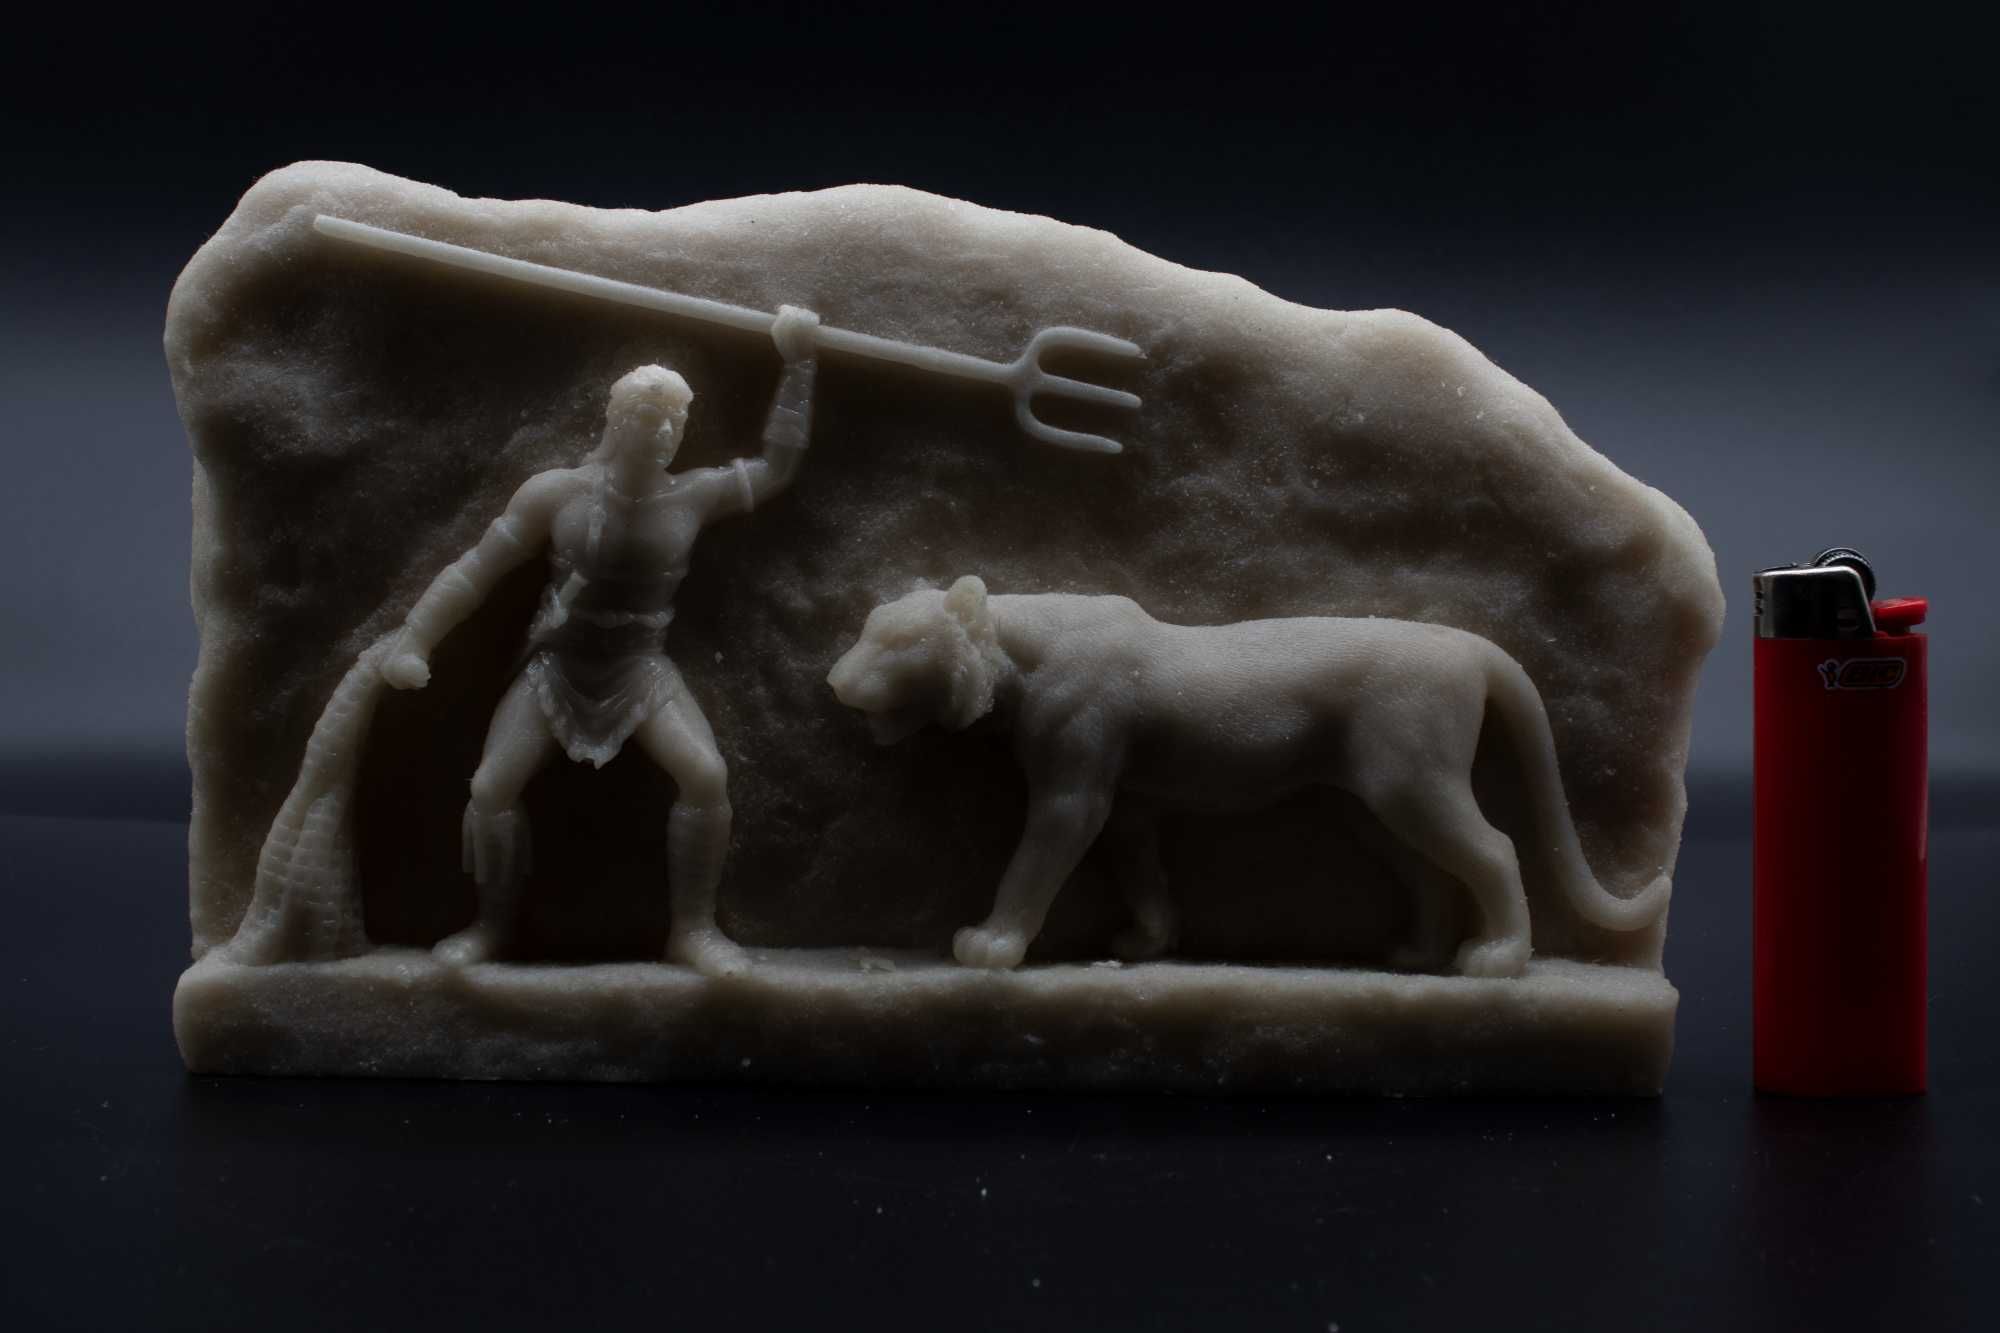 Ръчно изработена мраморна статуя на гладиатор, който се бие с див звяр